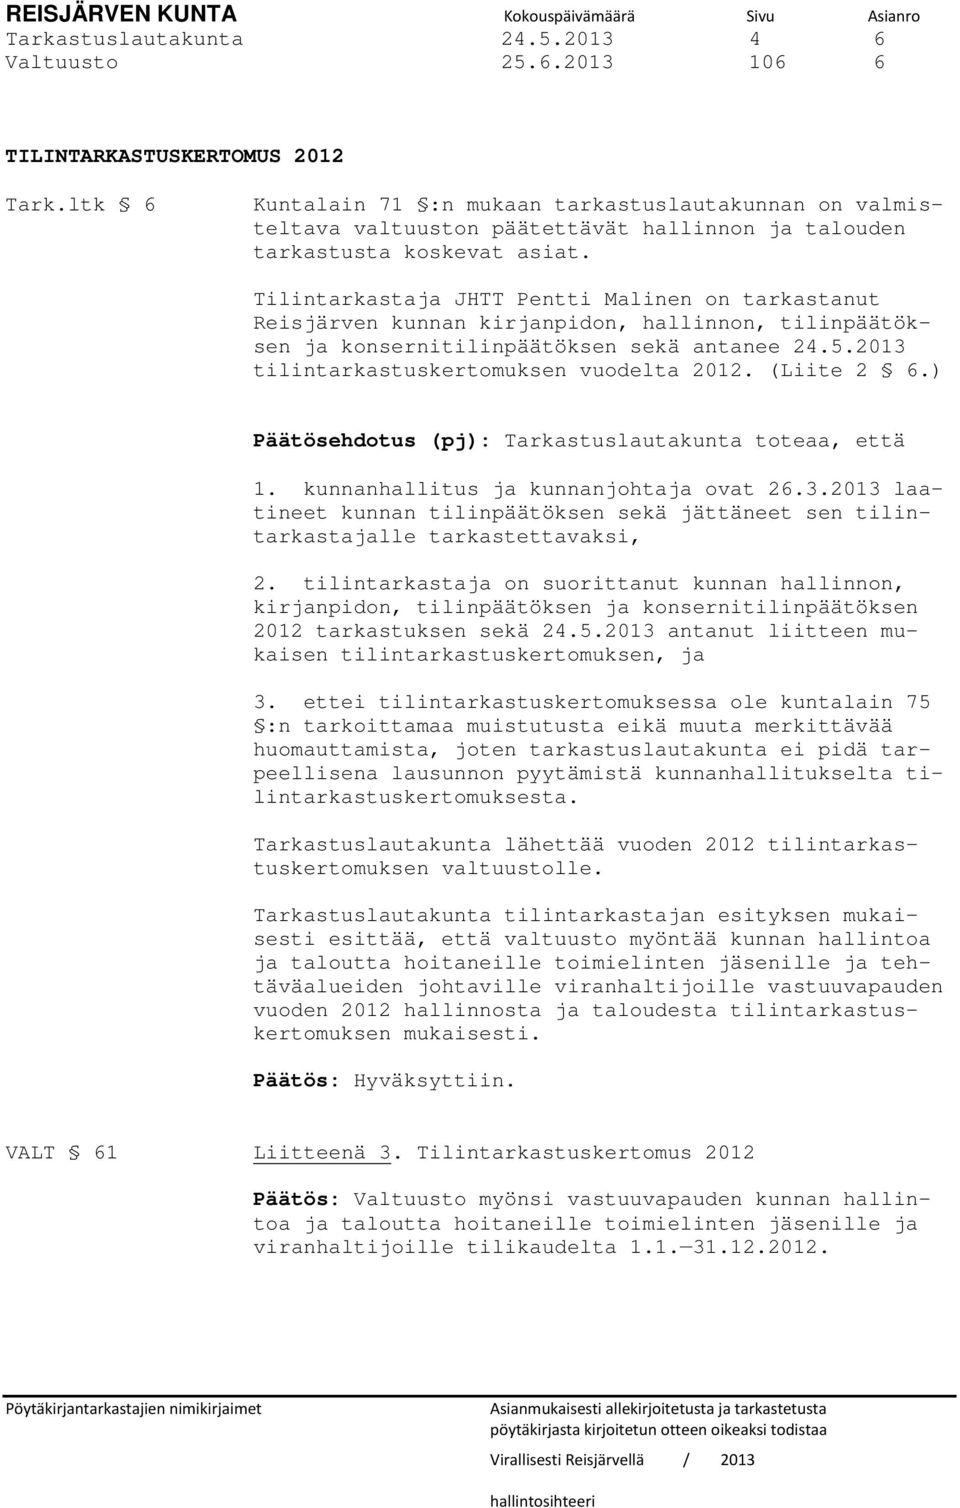 Tilintarkastaja JHTT Pentti Malinen on tarkastanut Reisjärven kunnan kirjanpidon, hallinnon, tilinpäätöksen ja konsernitilinpäätöksen sekä antanee 24.5.2013 tilintarkastuskertomuksen vuodelta 2012.